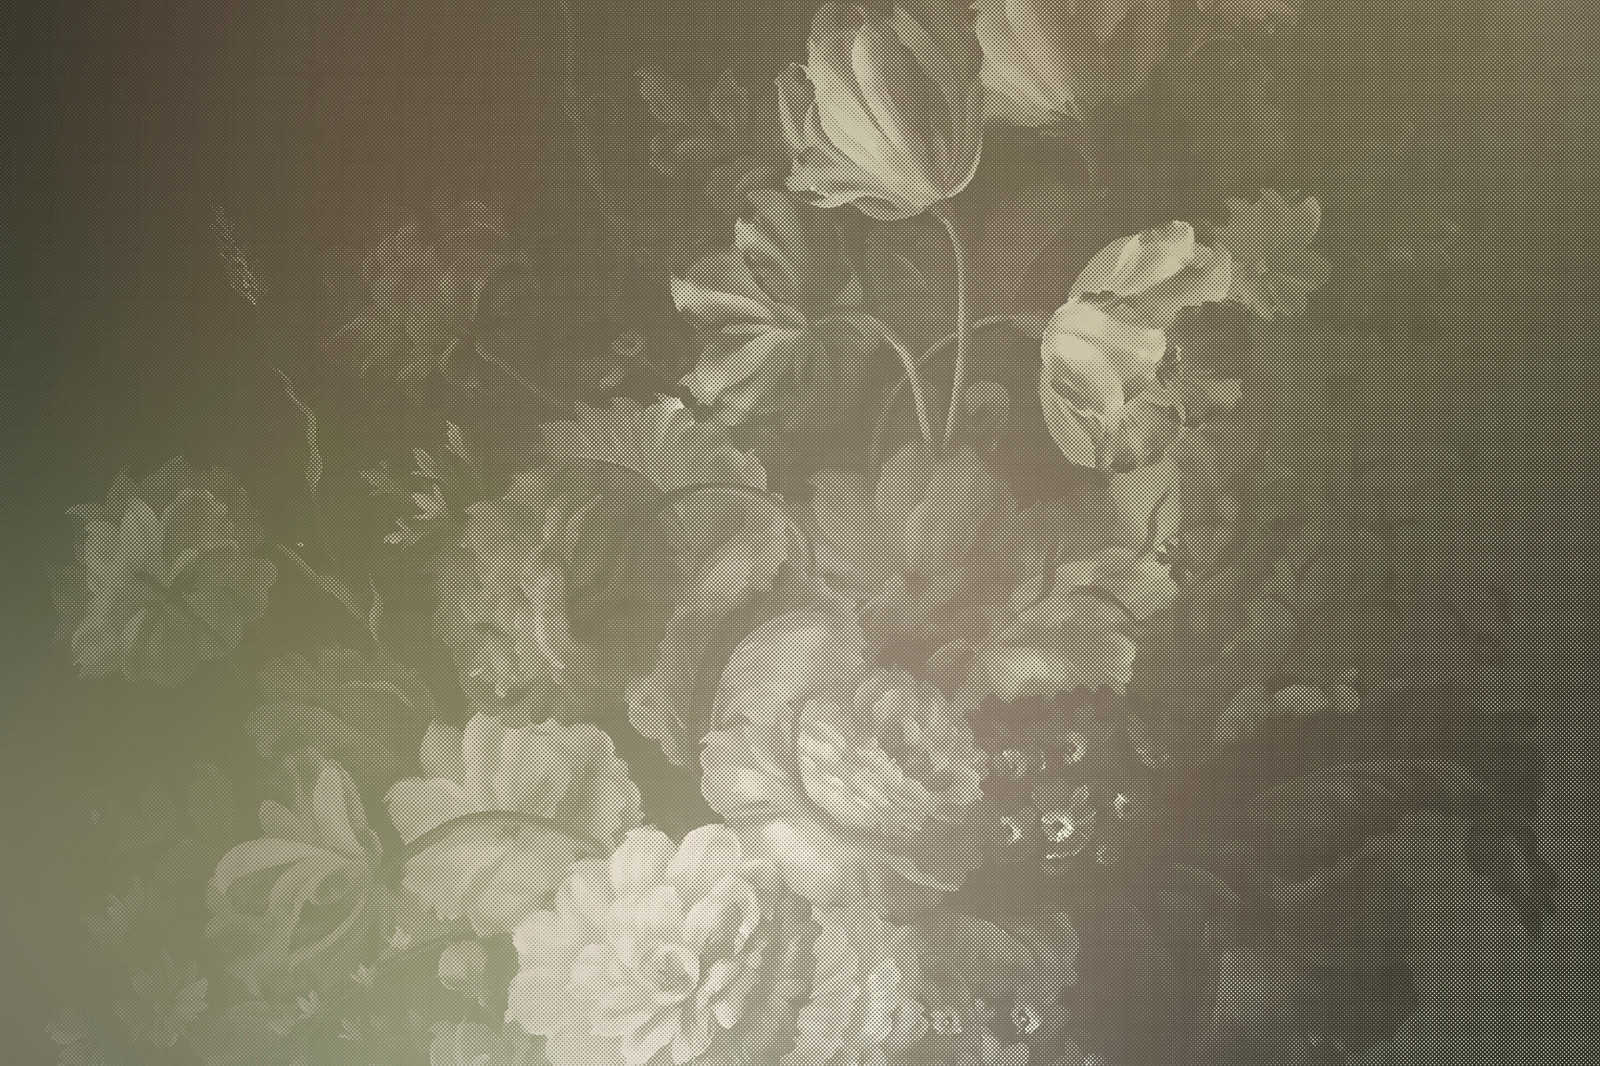             Pastello olandese 4 - Quadro su tela con bouquet artistico in stile olandese - 0,90 m x 0,60 m
        